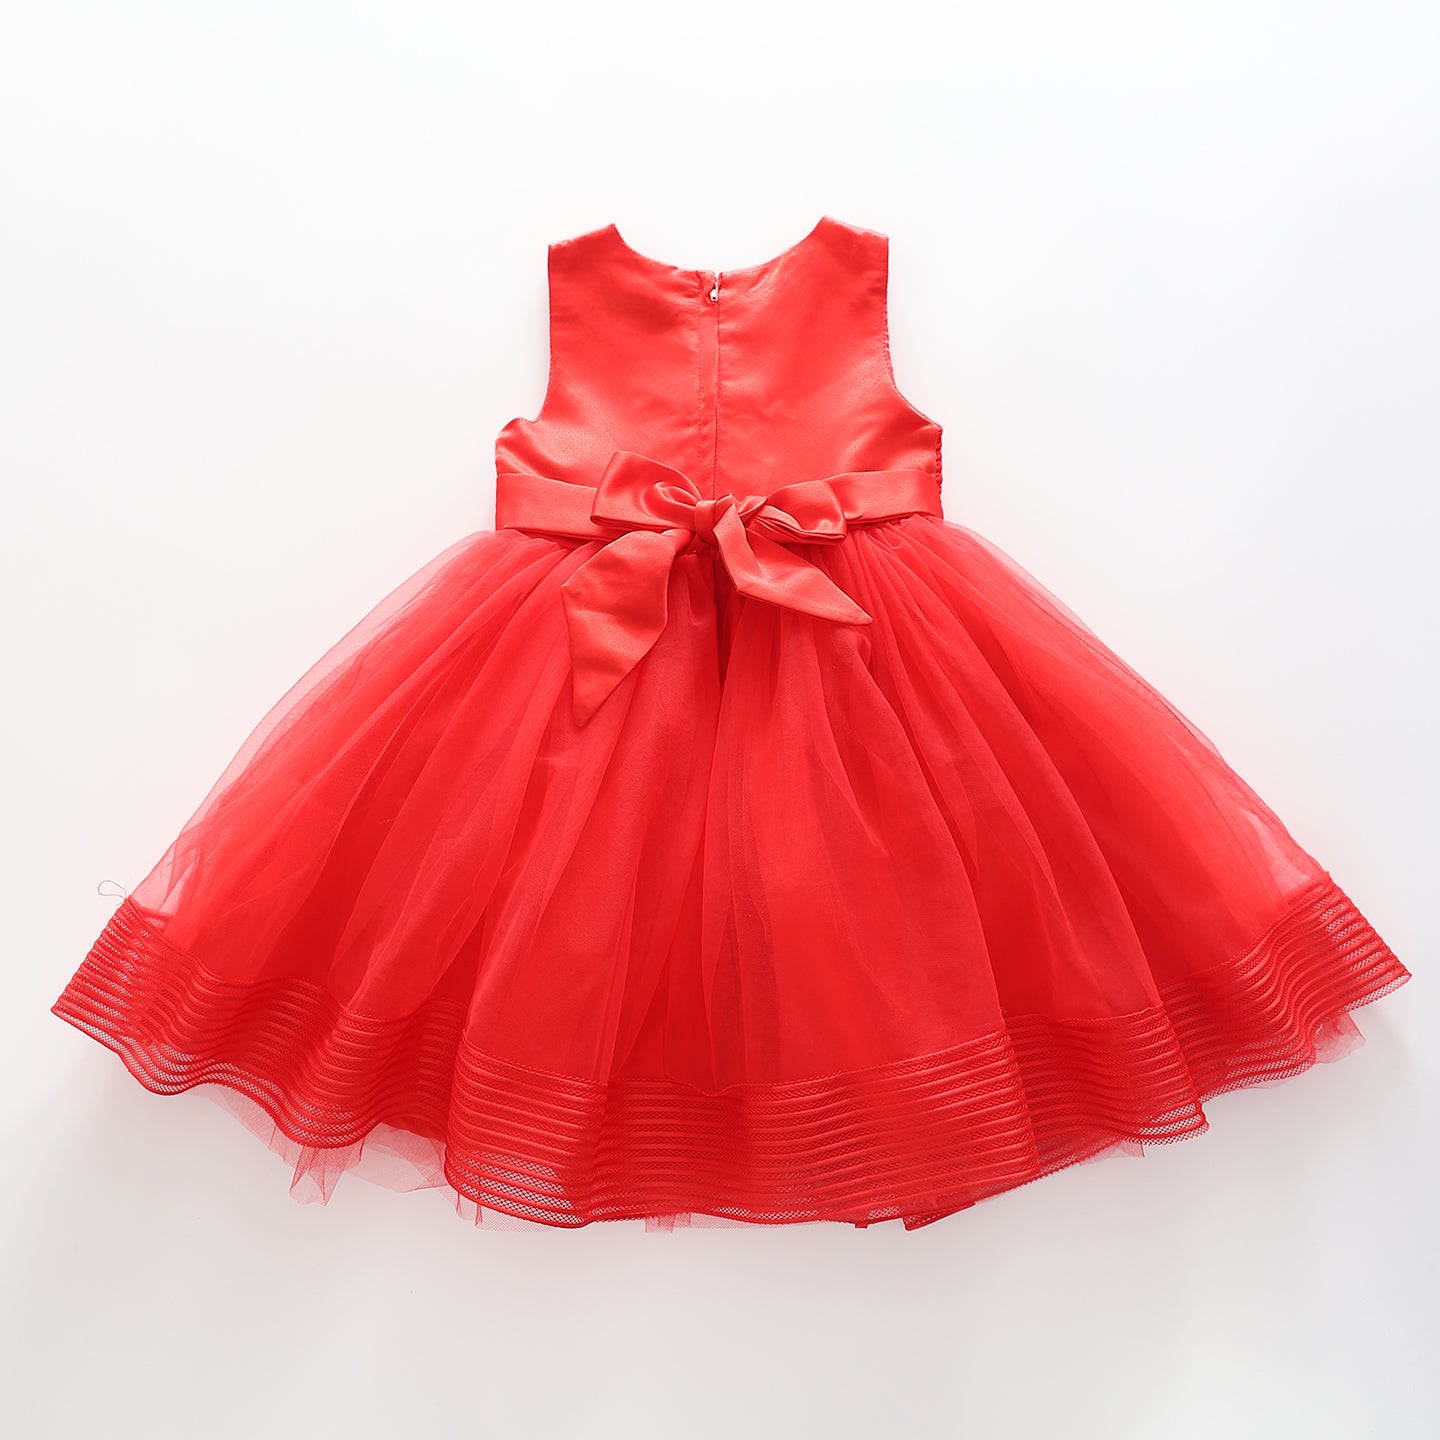 Girls' Elegant Tulle Formalwear Dress - Red